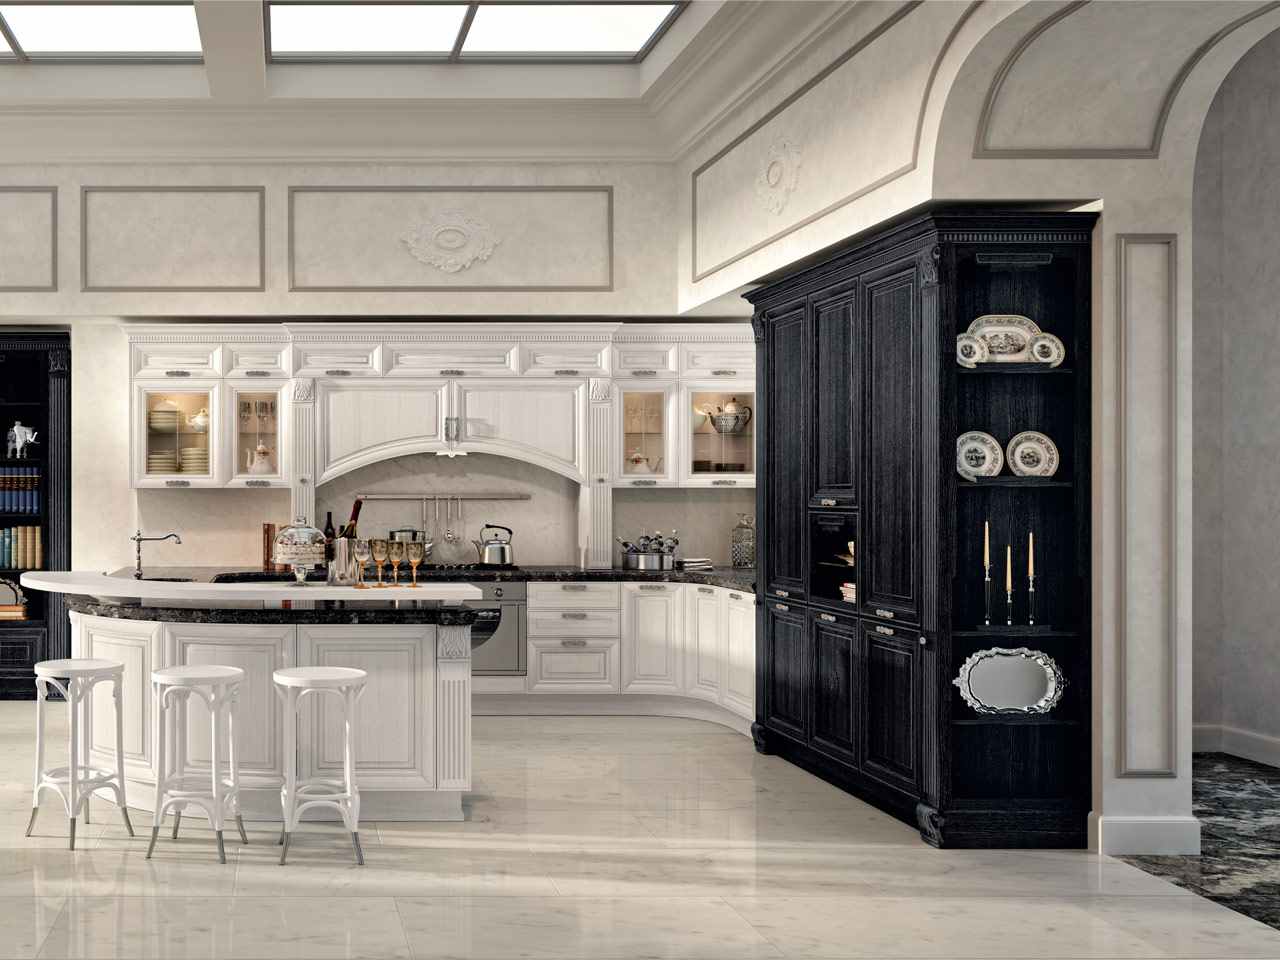 lyxig lägenhetinredning färgschema svartvitt kök bardisk marmorplattor